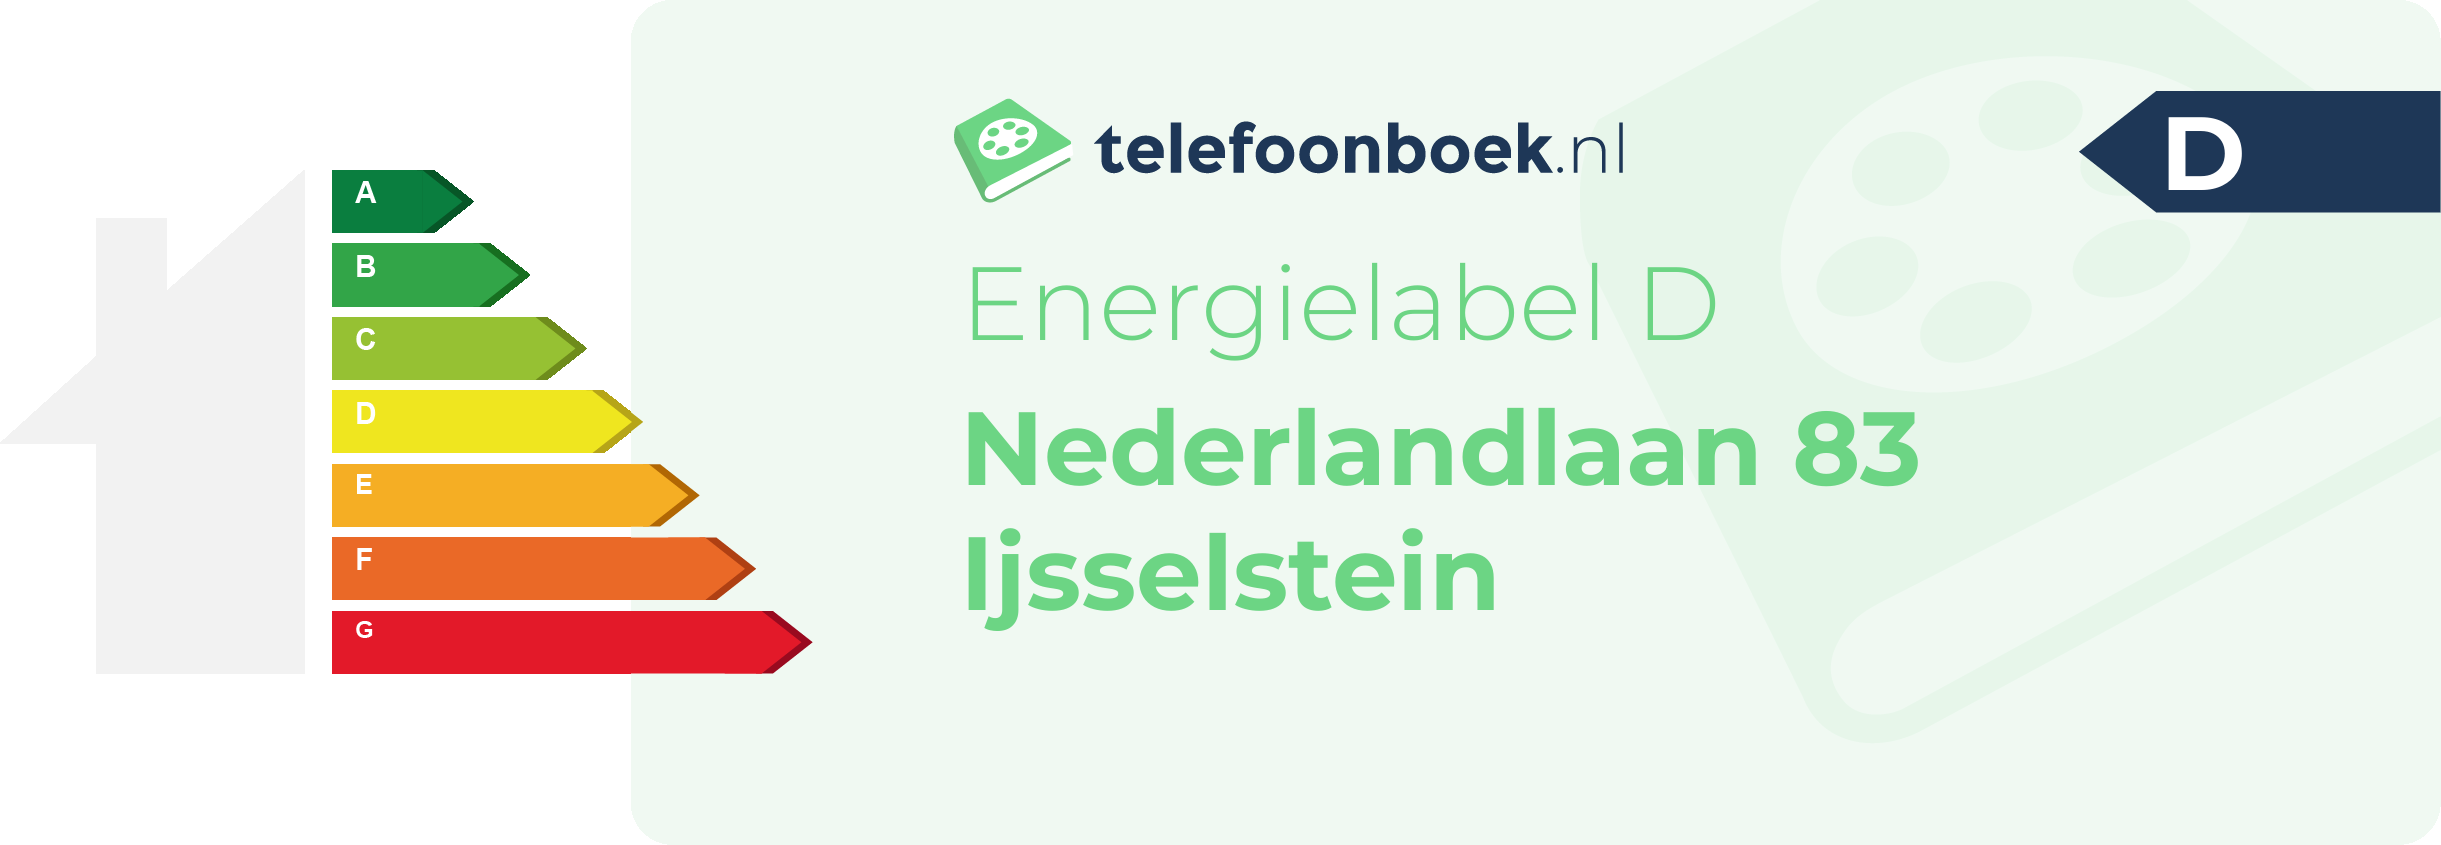 Energielabel Nederlandlaan 83 Ijsselstein